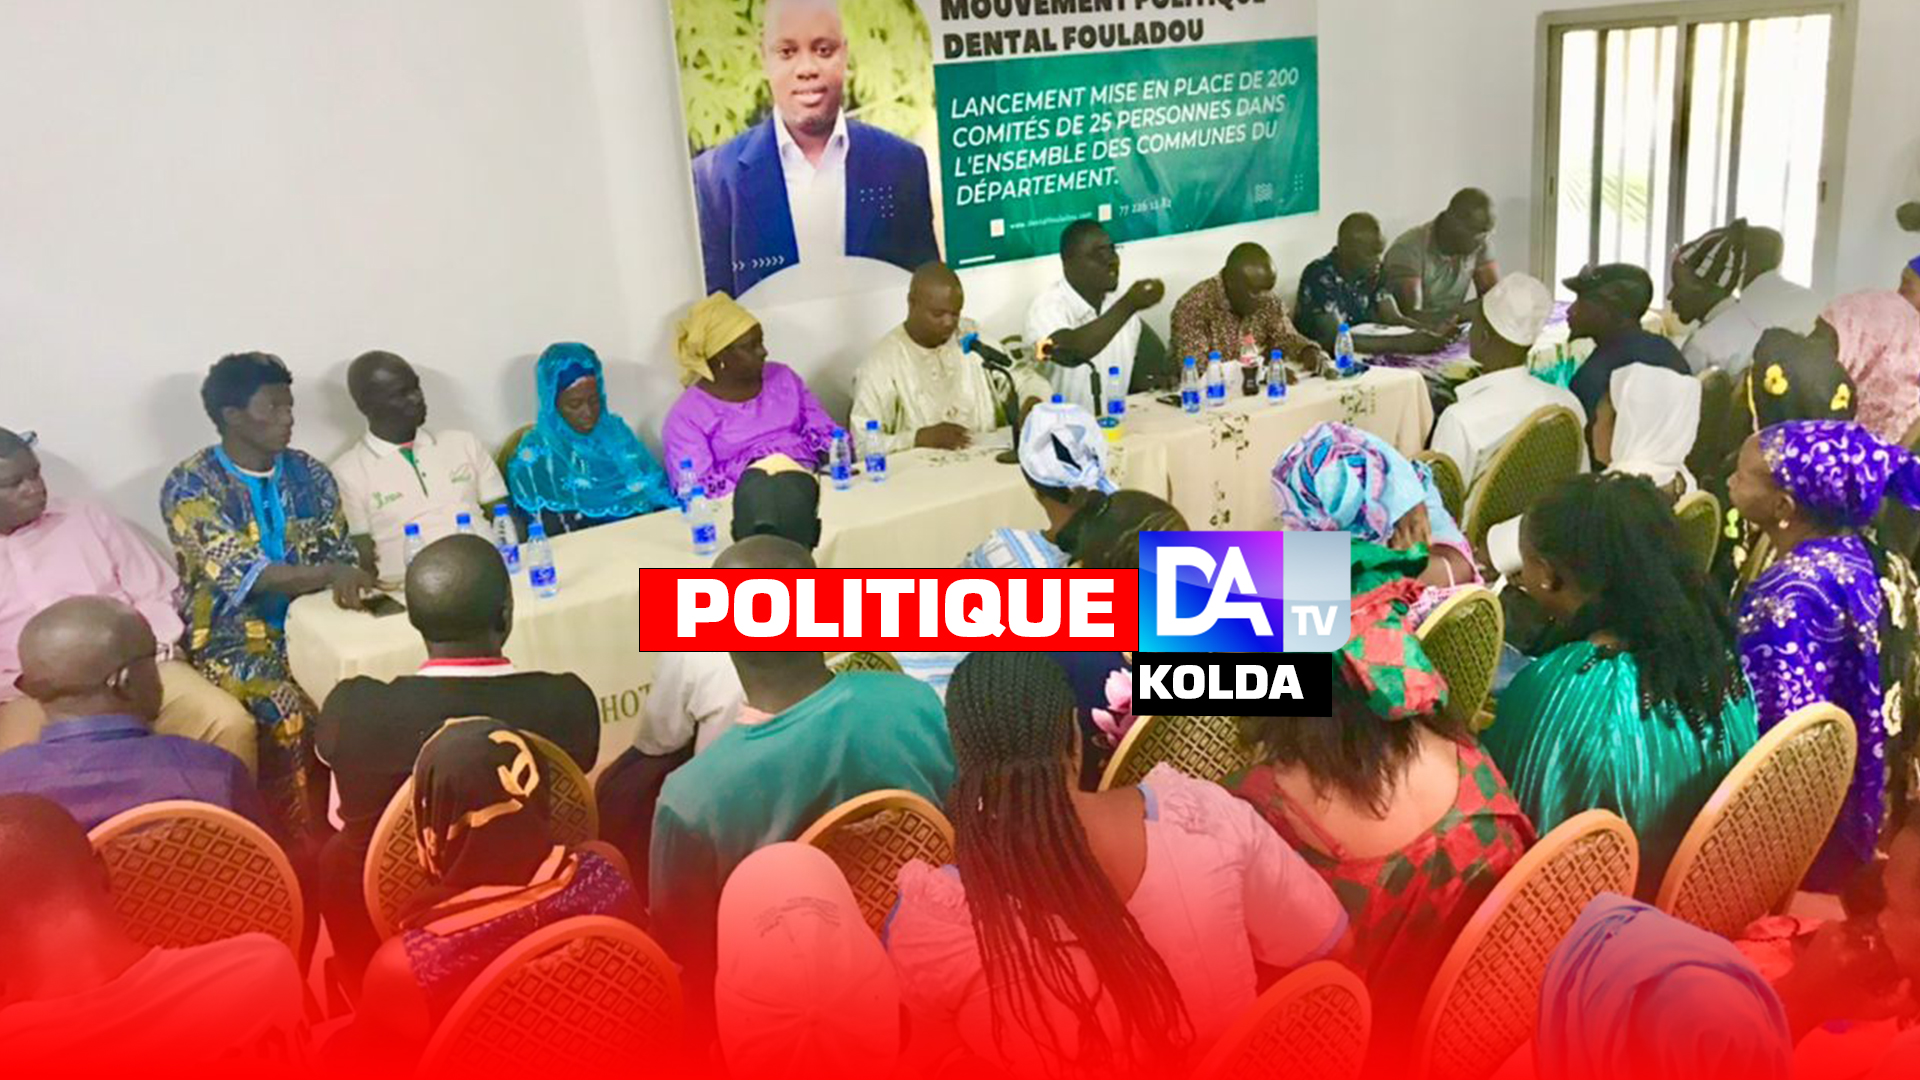 KOLDA / Aliou Kandé (président du mouvement Dental Fouladou) : « Notre ambition est d’installer au moins 200 comités dans le département dont 80 dans la commune… »